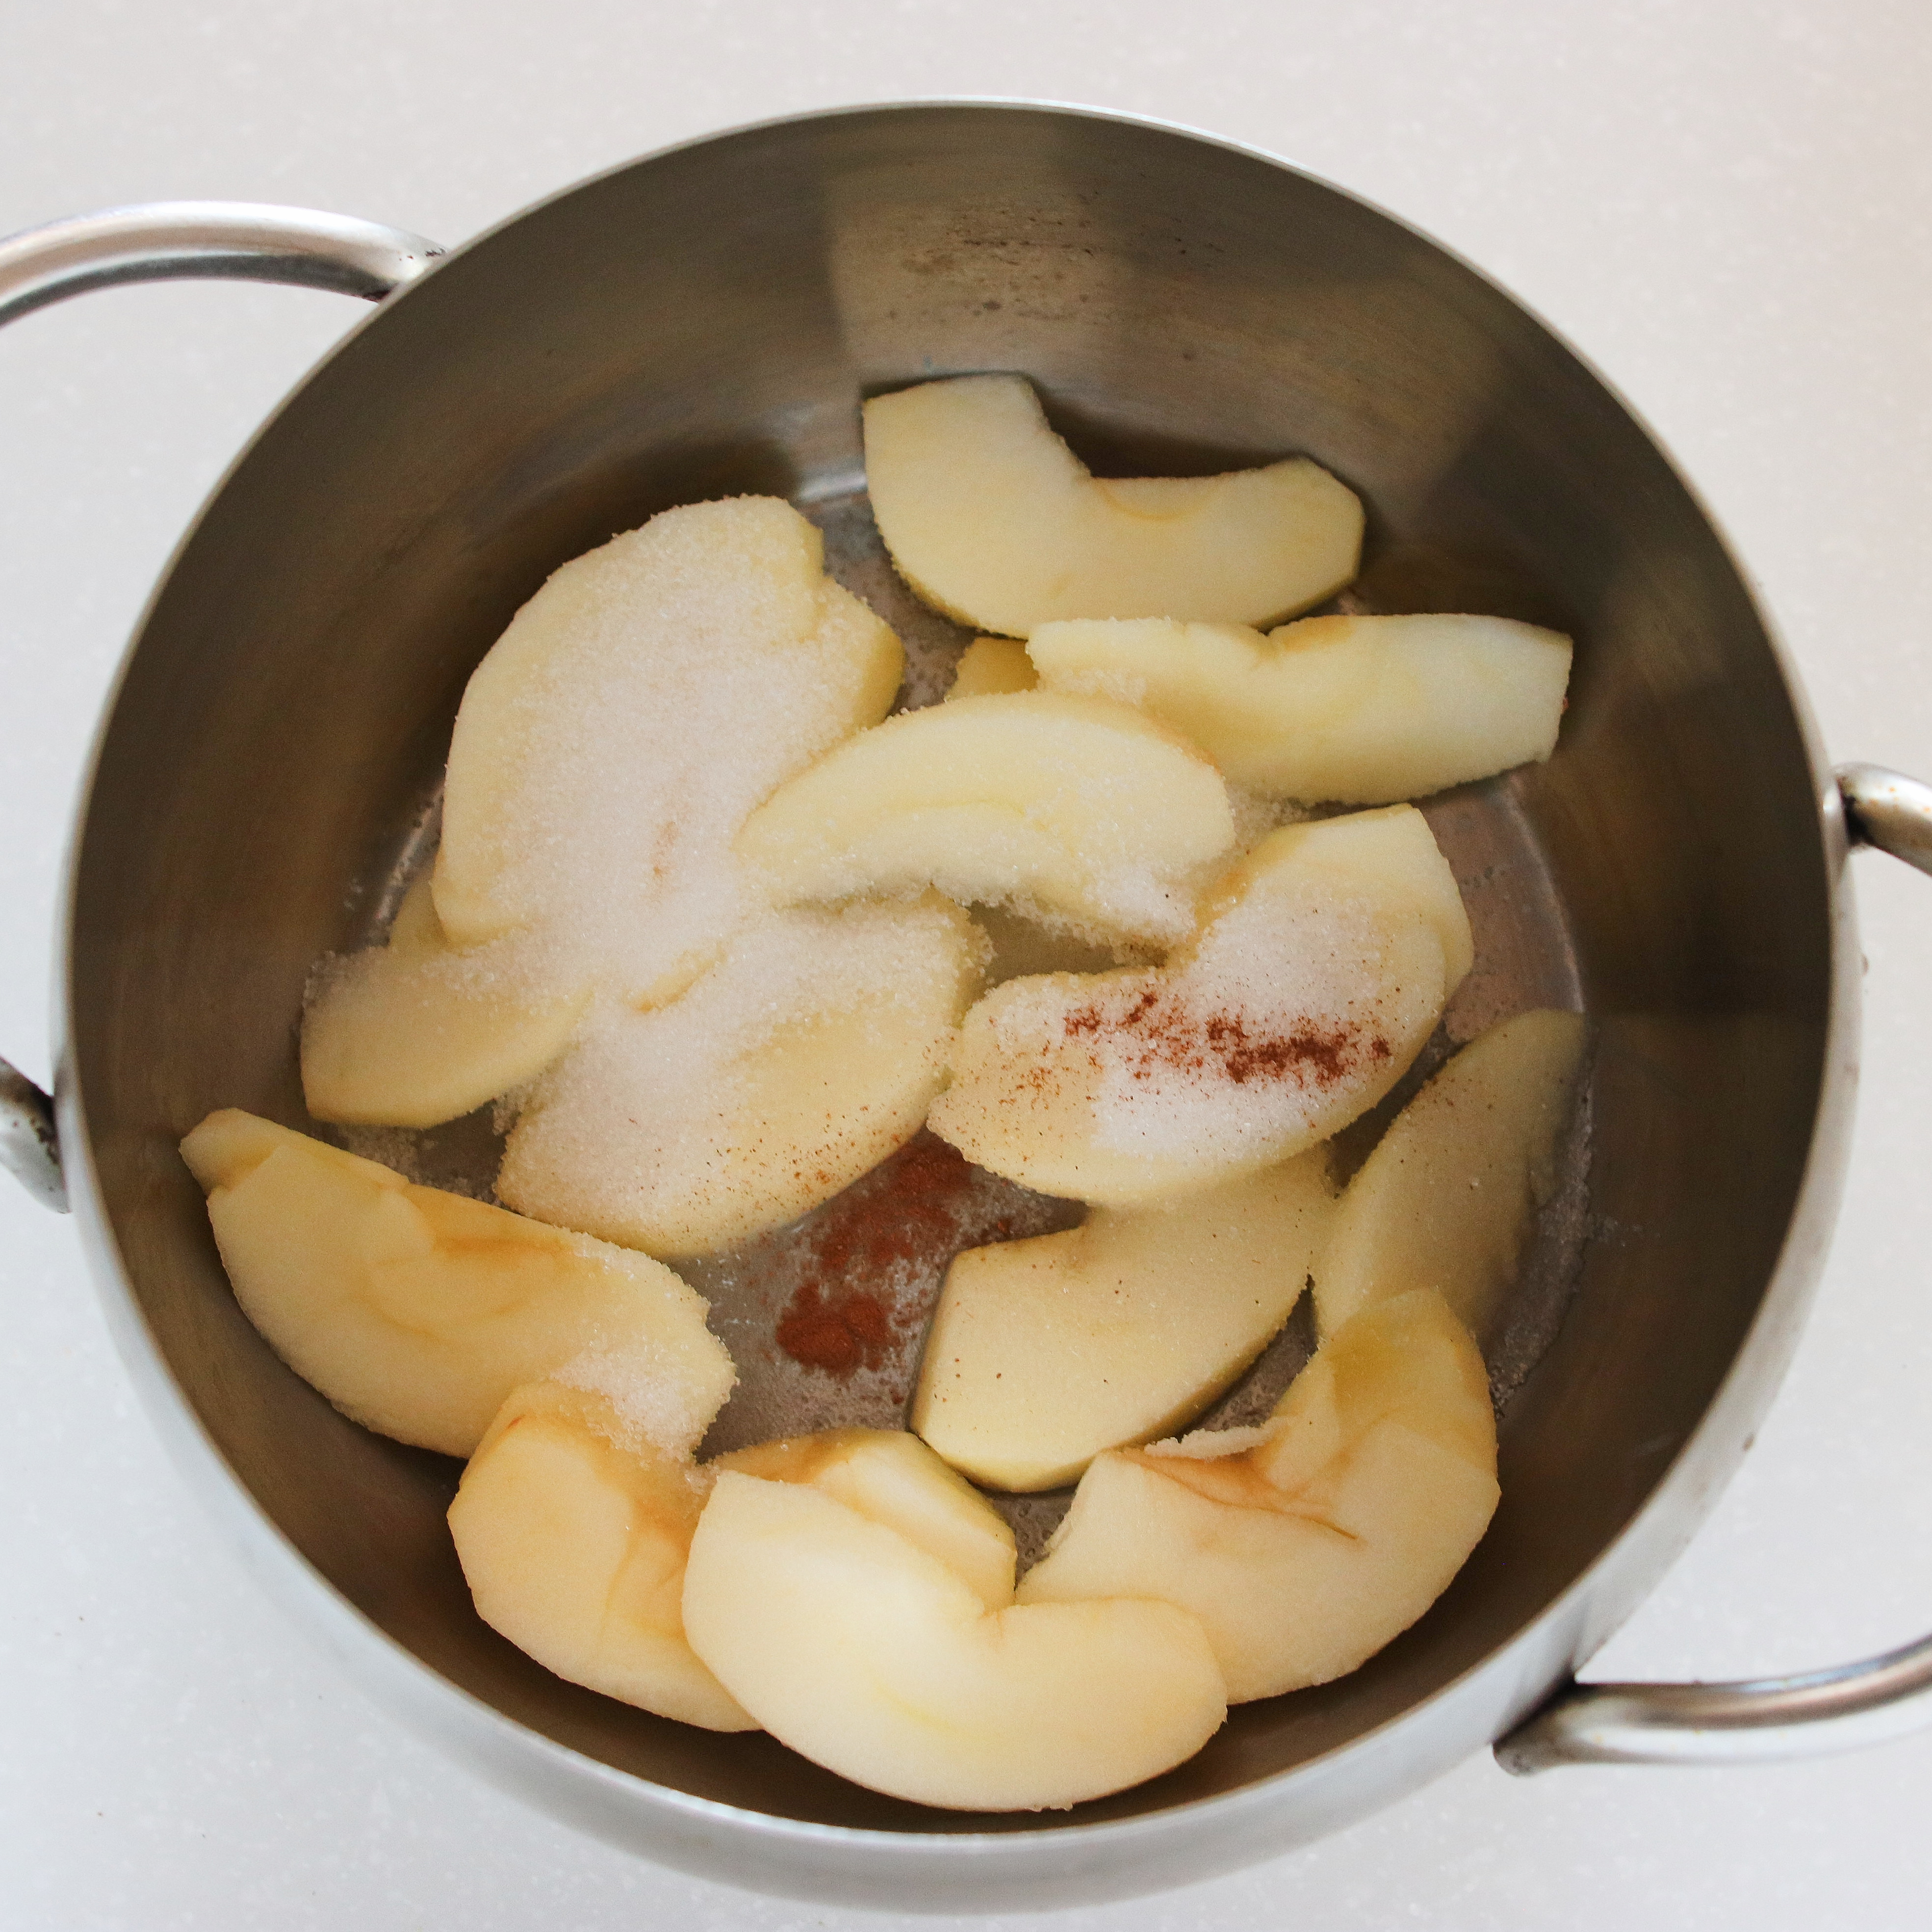 鍋にりんごと砂糖、レモン果汁、シナモンを加えて蓋をして弱めの中火で10分加熱する。
りんごに火が通ったら蓋を外し、水分を飛ばして粗熱を取る。